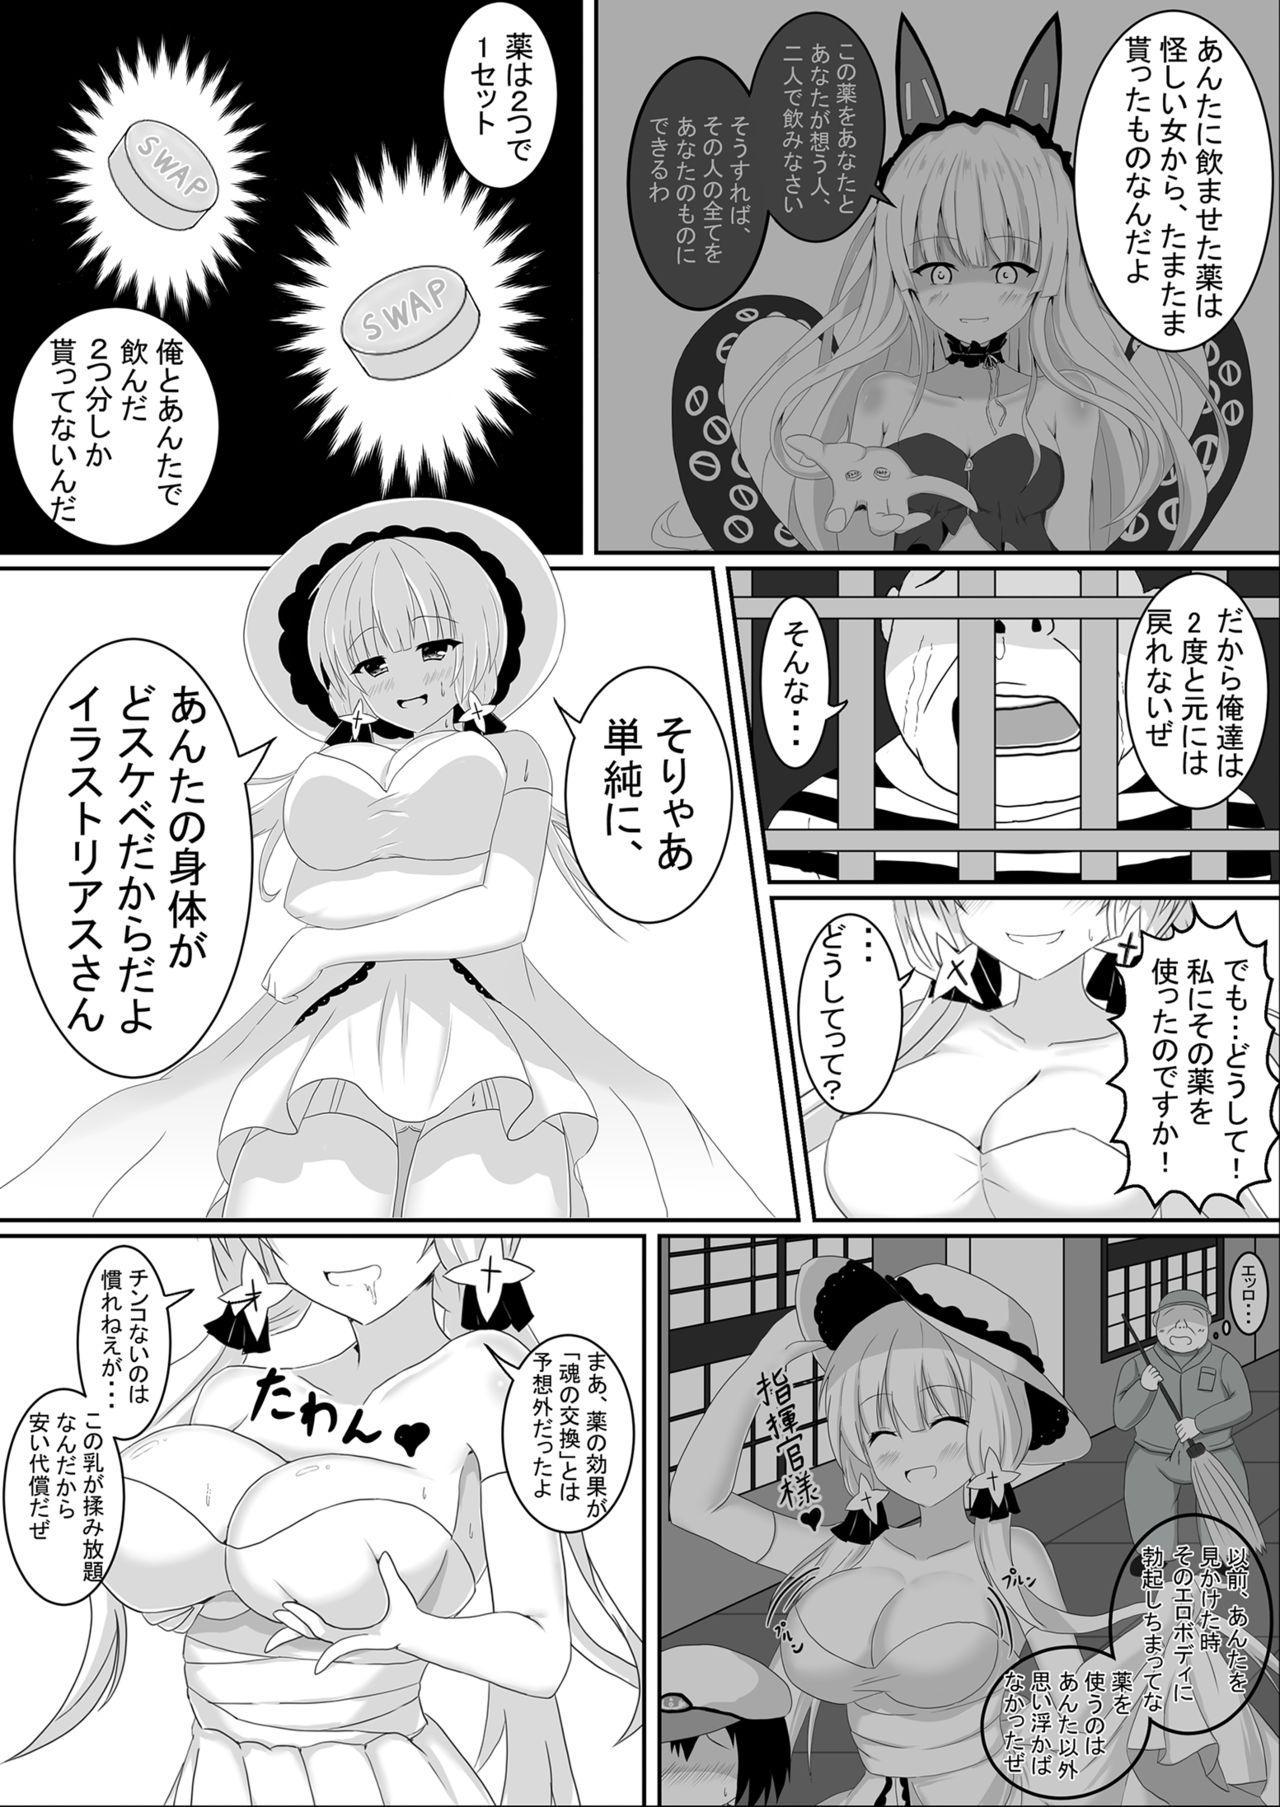 Namorada Irekawari, Hyoui E Fukusuumai 3 - Azur lane Lezbi - Page 5